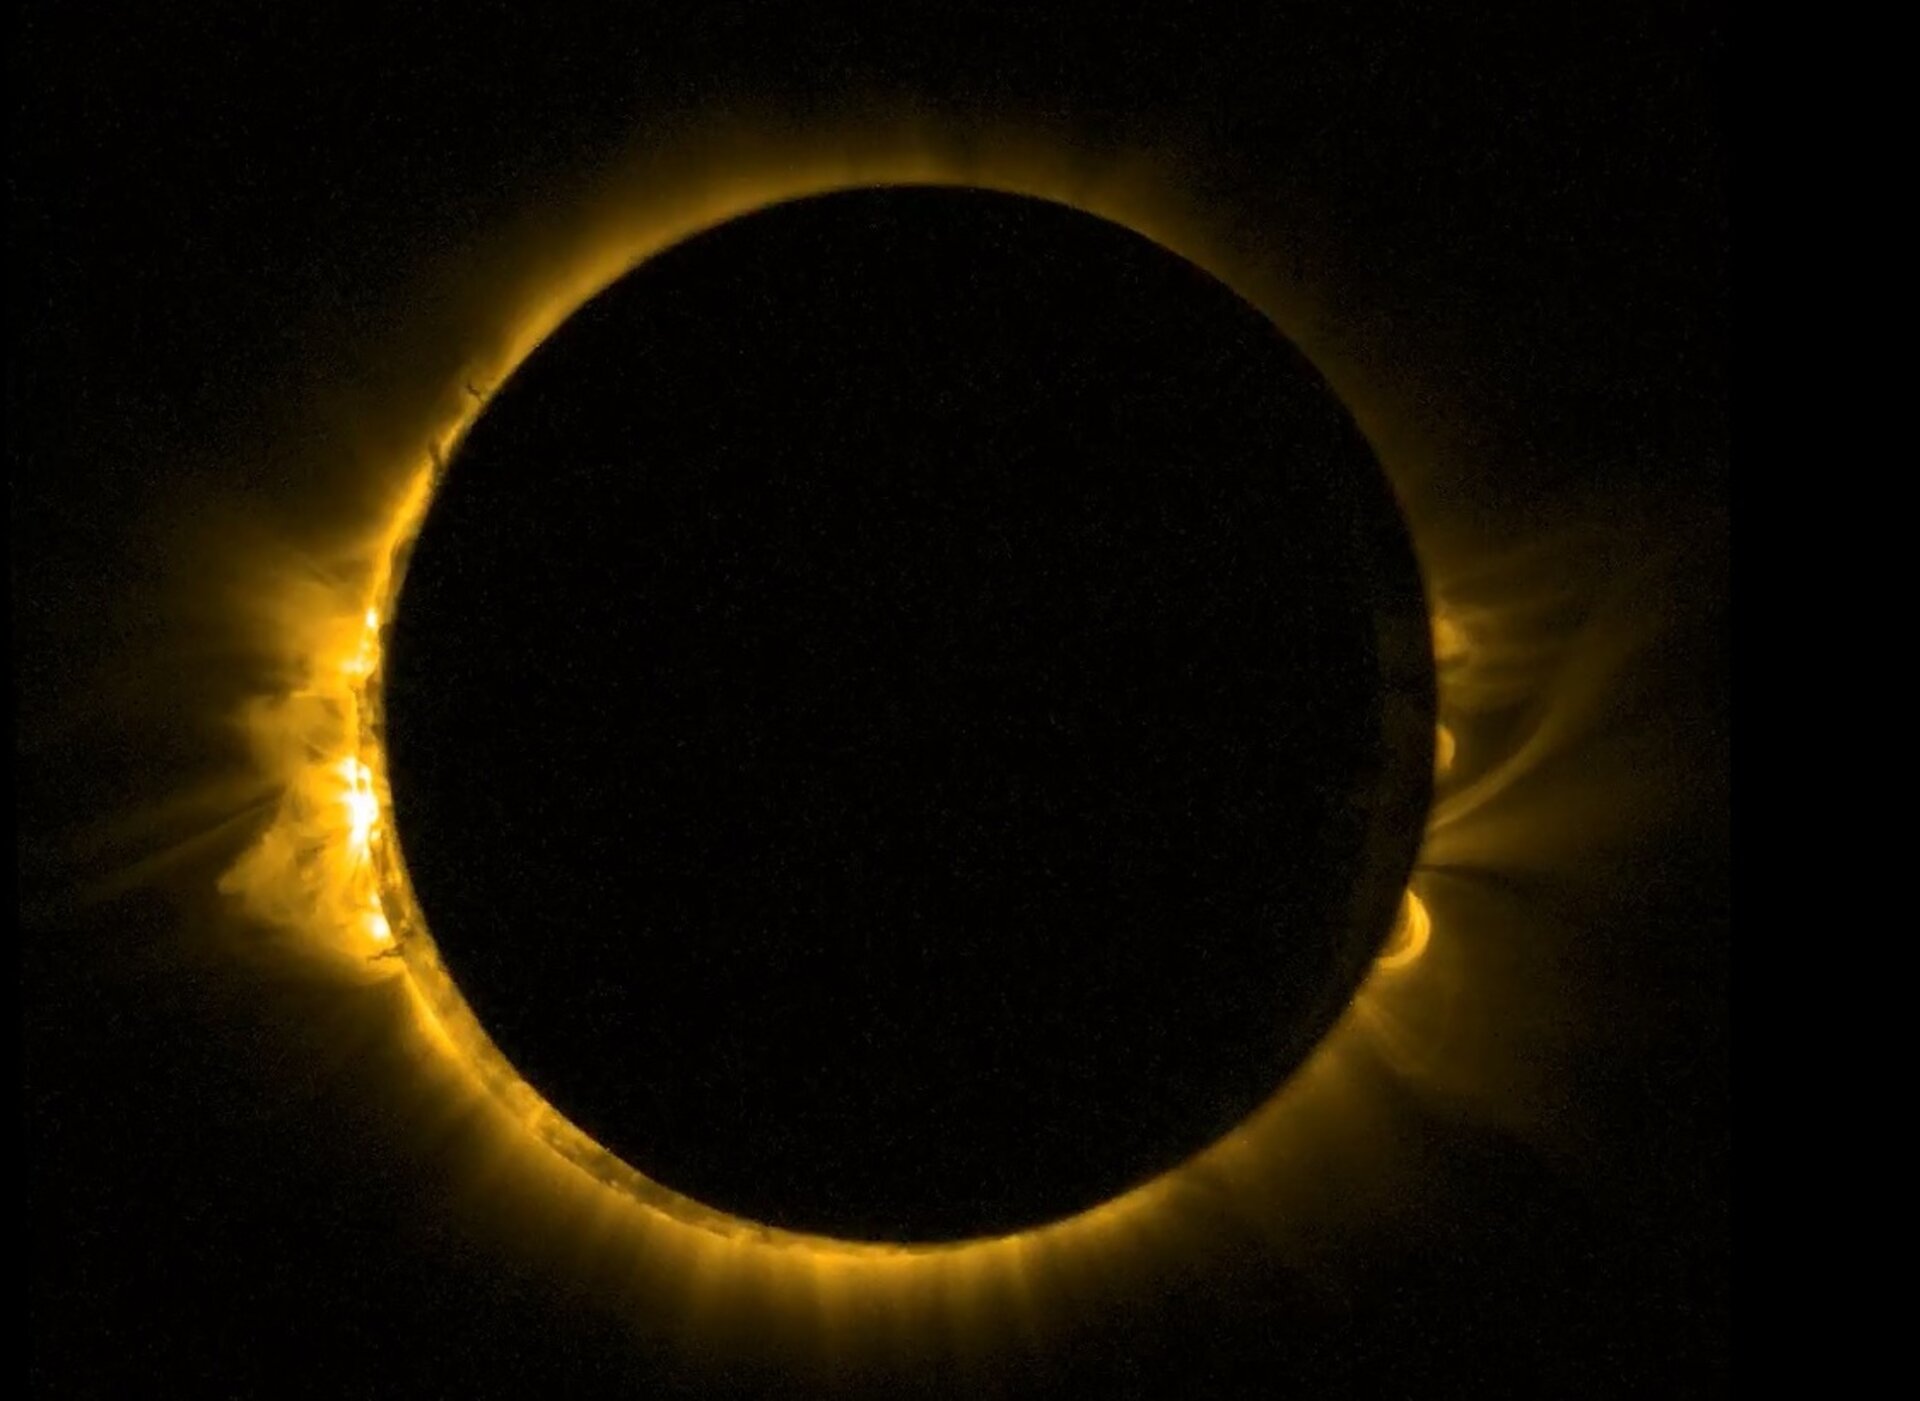 De zonsverduistering, gezien vanuit de ruimte door Proba 2